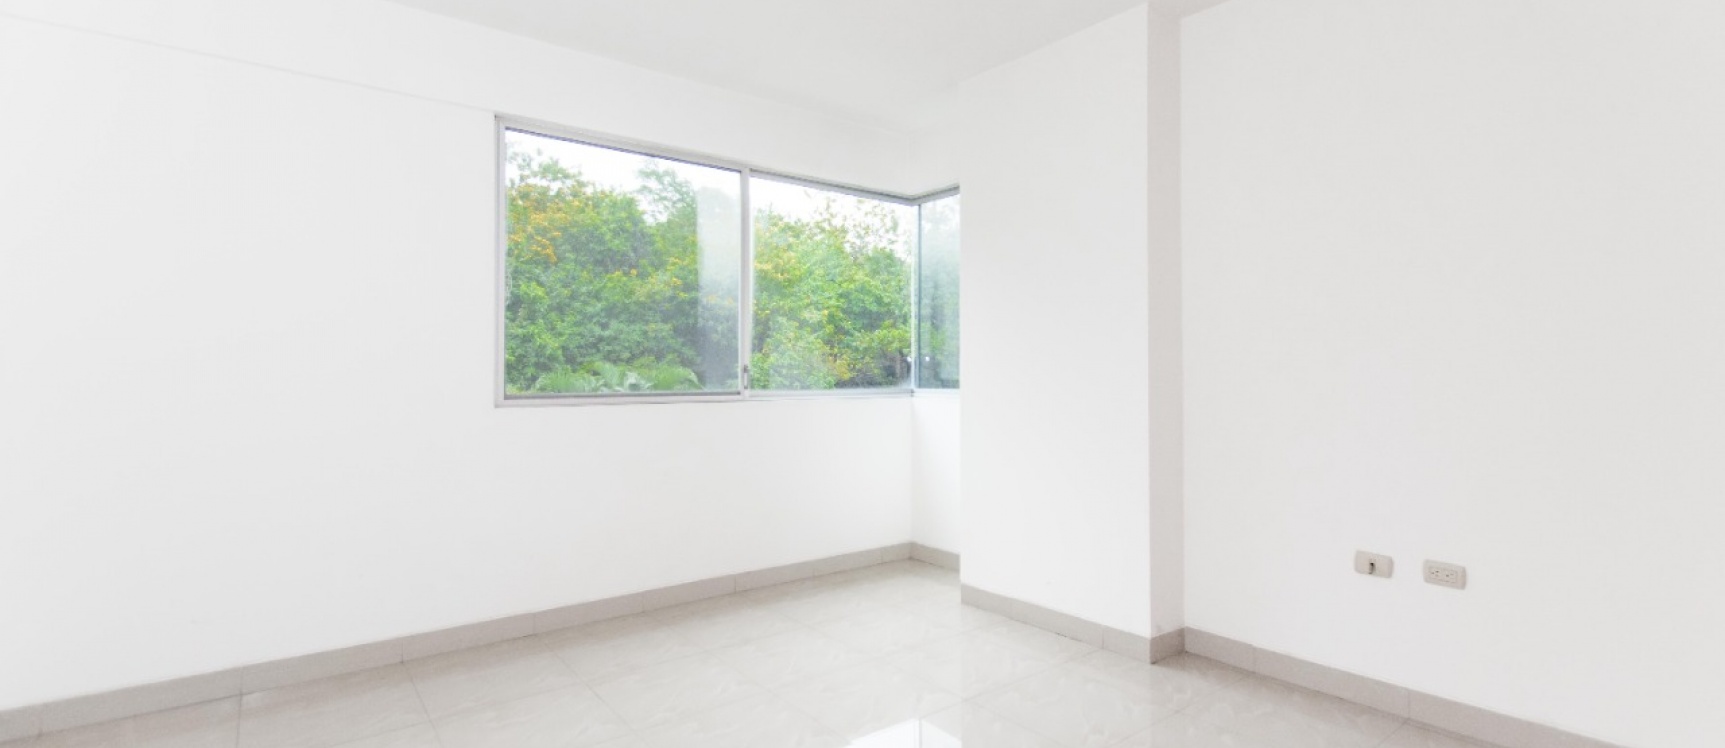 GeoBienes - Departamento de 2 habitaciones en venta, Condominio Vizcaya Gardens, Ceibos - Plusvalia Guayaquil Casas de venta y alquiler Inmobiliaria Ecuador